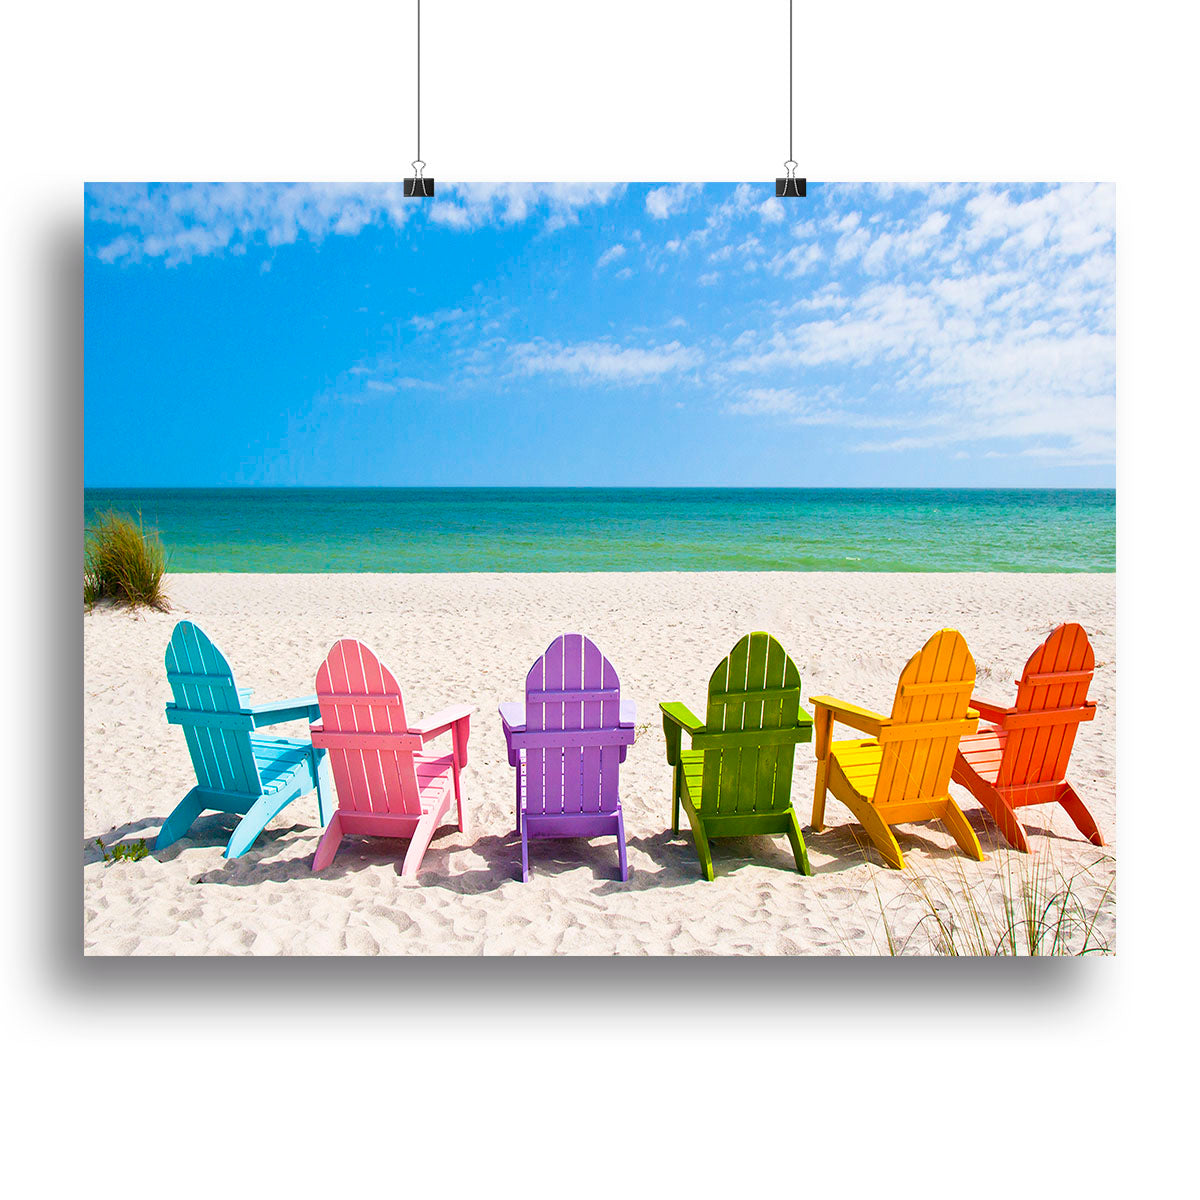 Beach Chairs on a Sun Beach Canvas Print or Poster - Canvas Art Rocks - 2